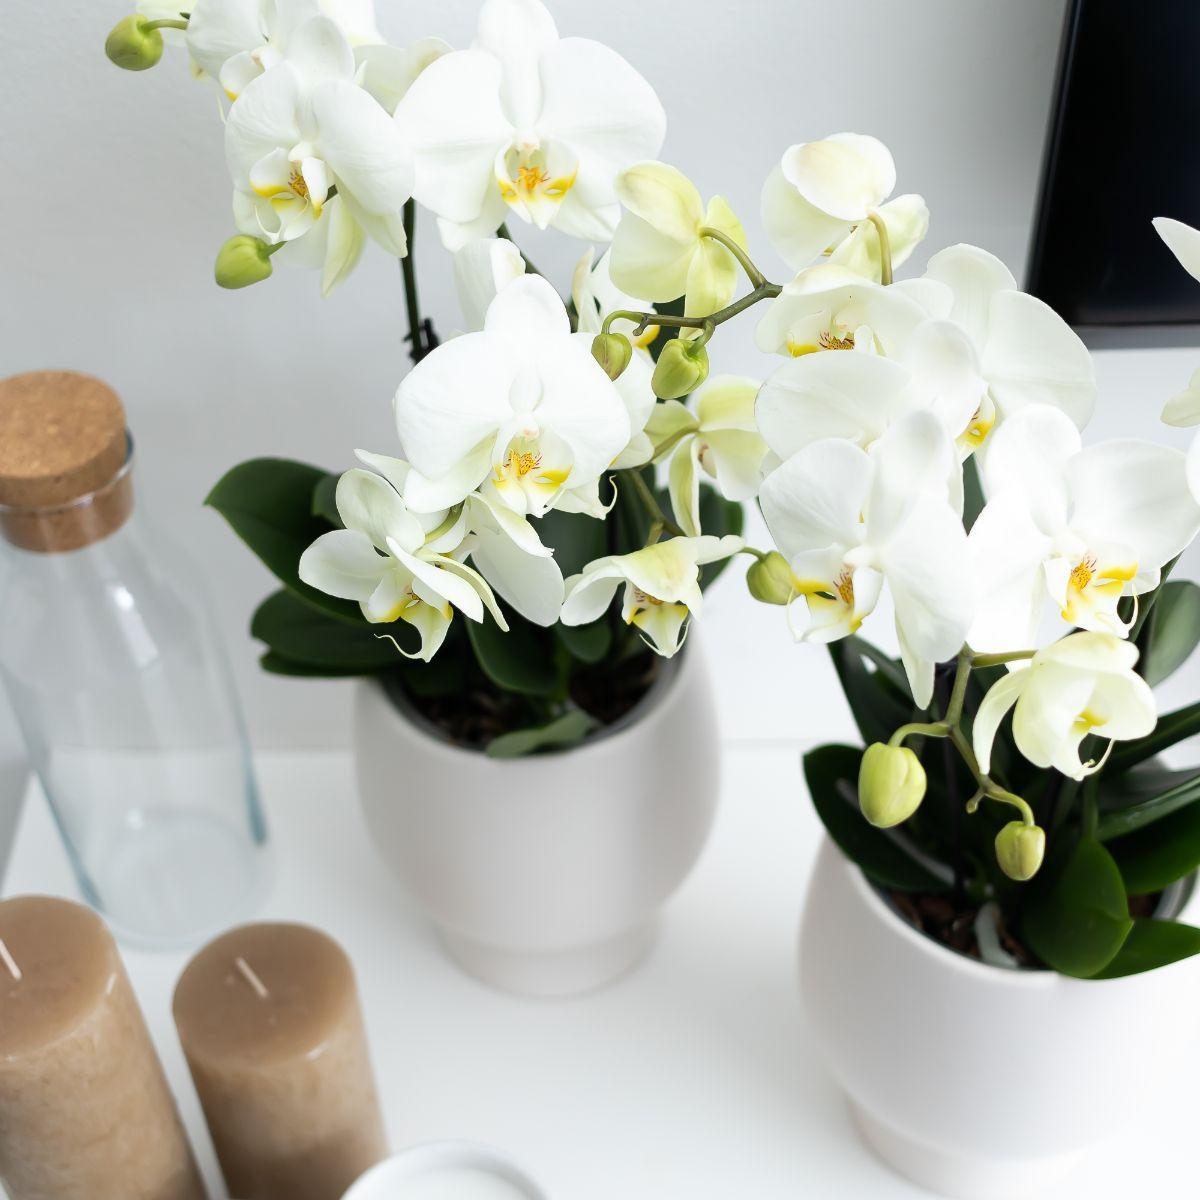 Orchidée blanche et son cache-pot blanc - plante d'intérieur fleurie